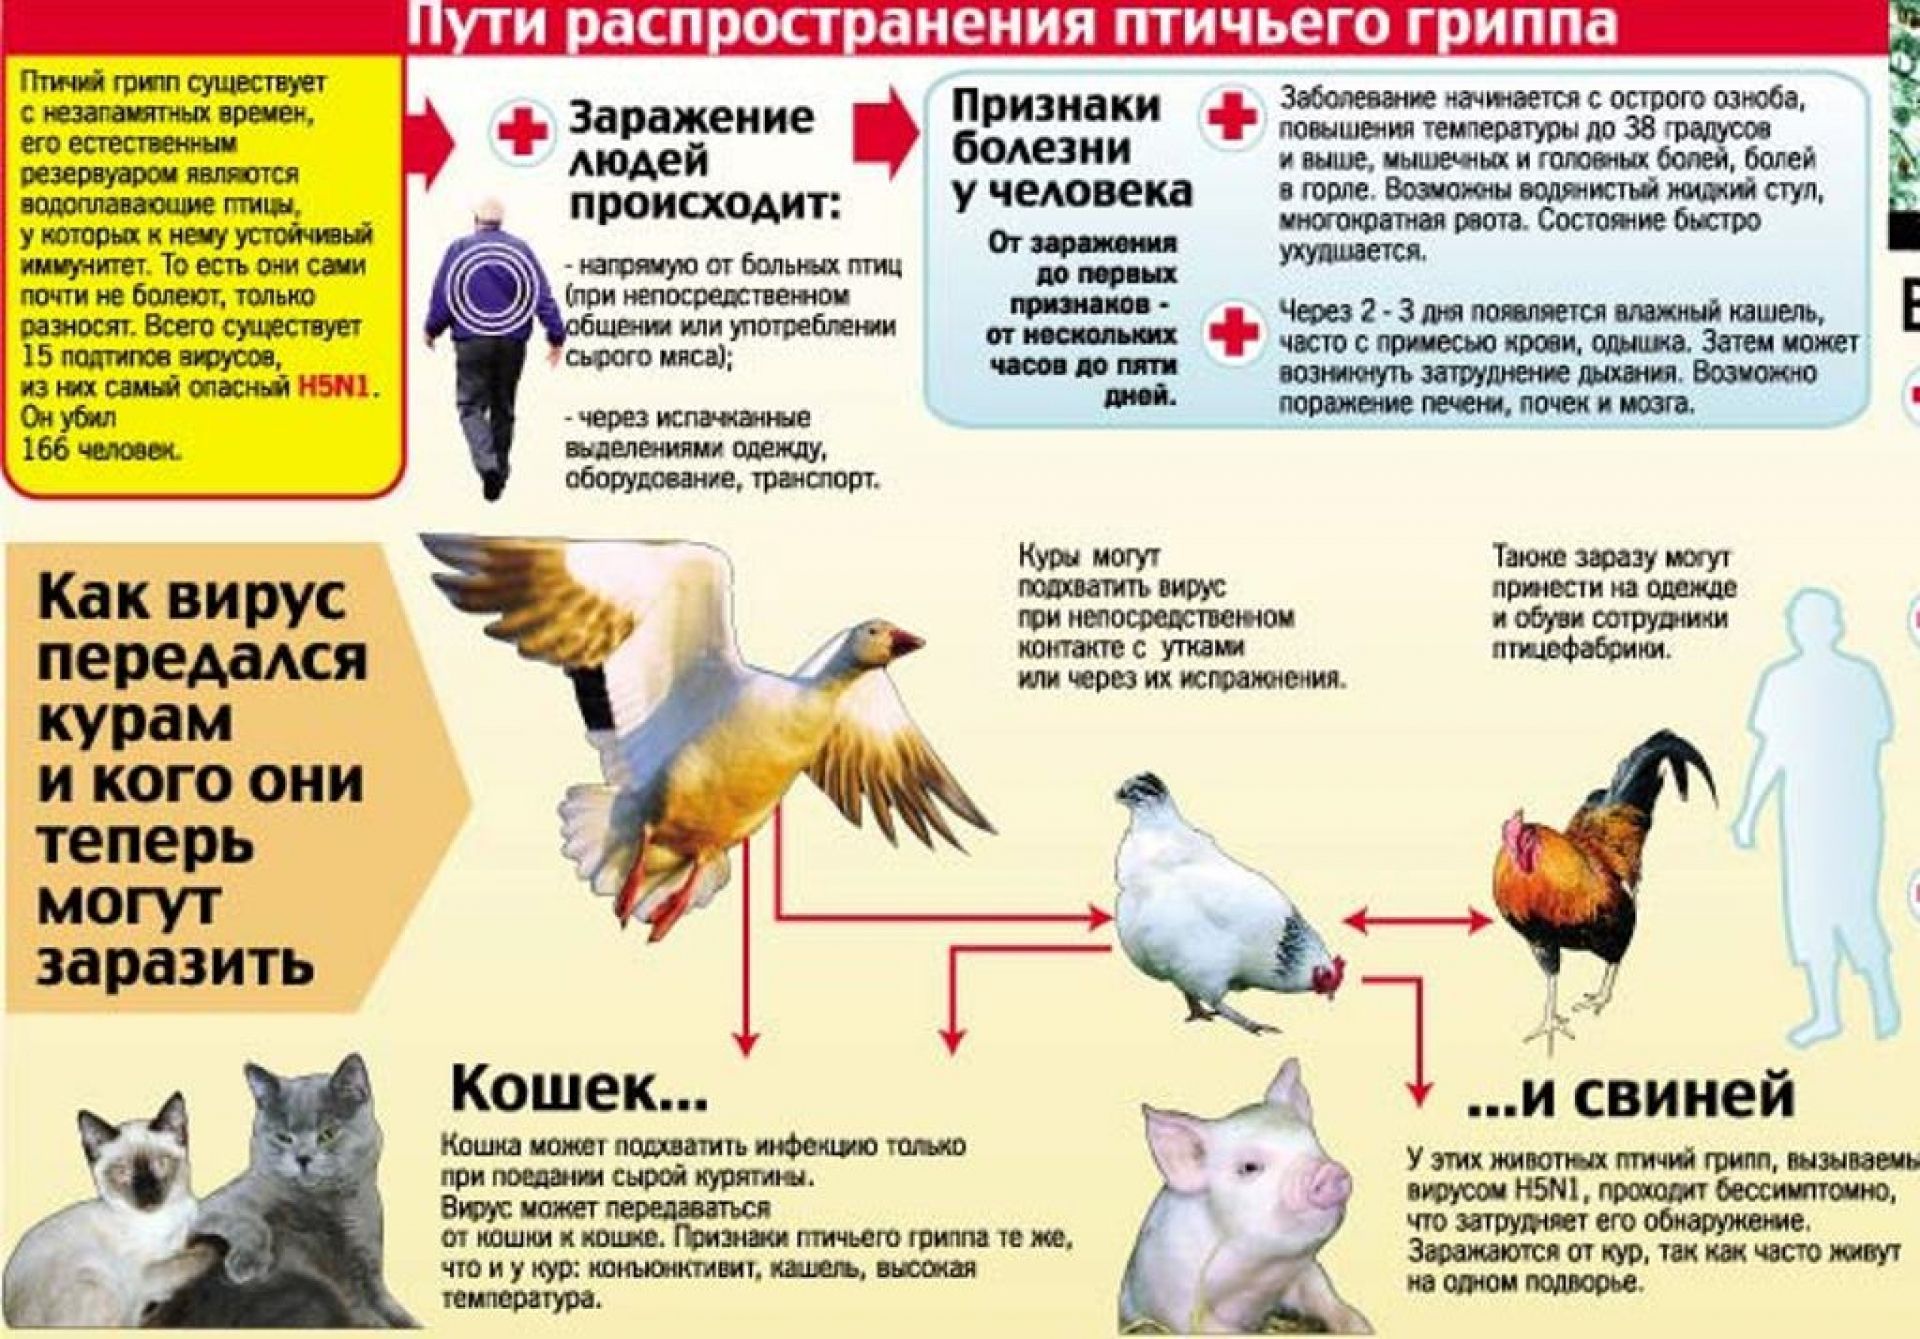 Болезни кур, опасные для человека: чем можно заразиться от птицы и как себя обезопасить?